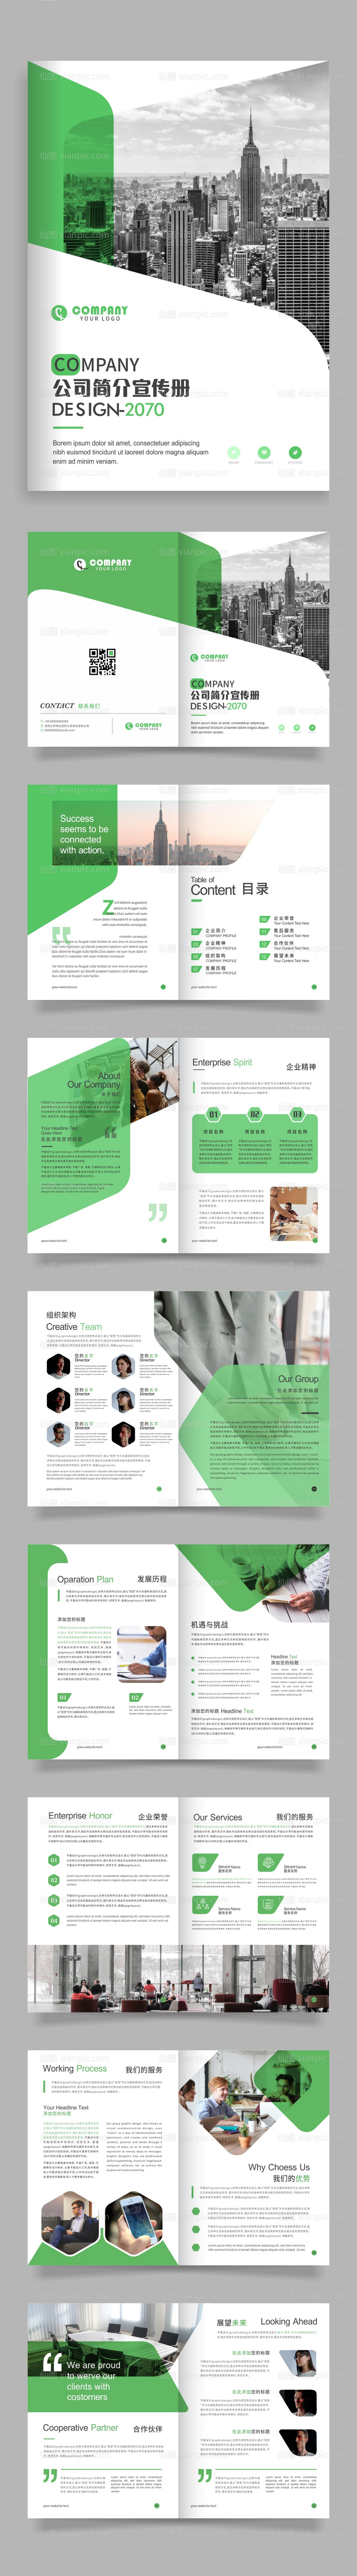 素材乐-绿色公司企业简介画册宣传册模板